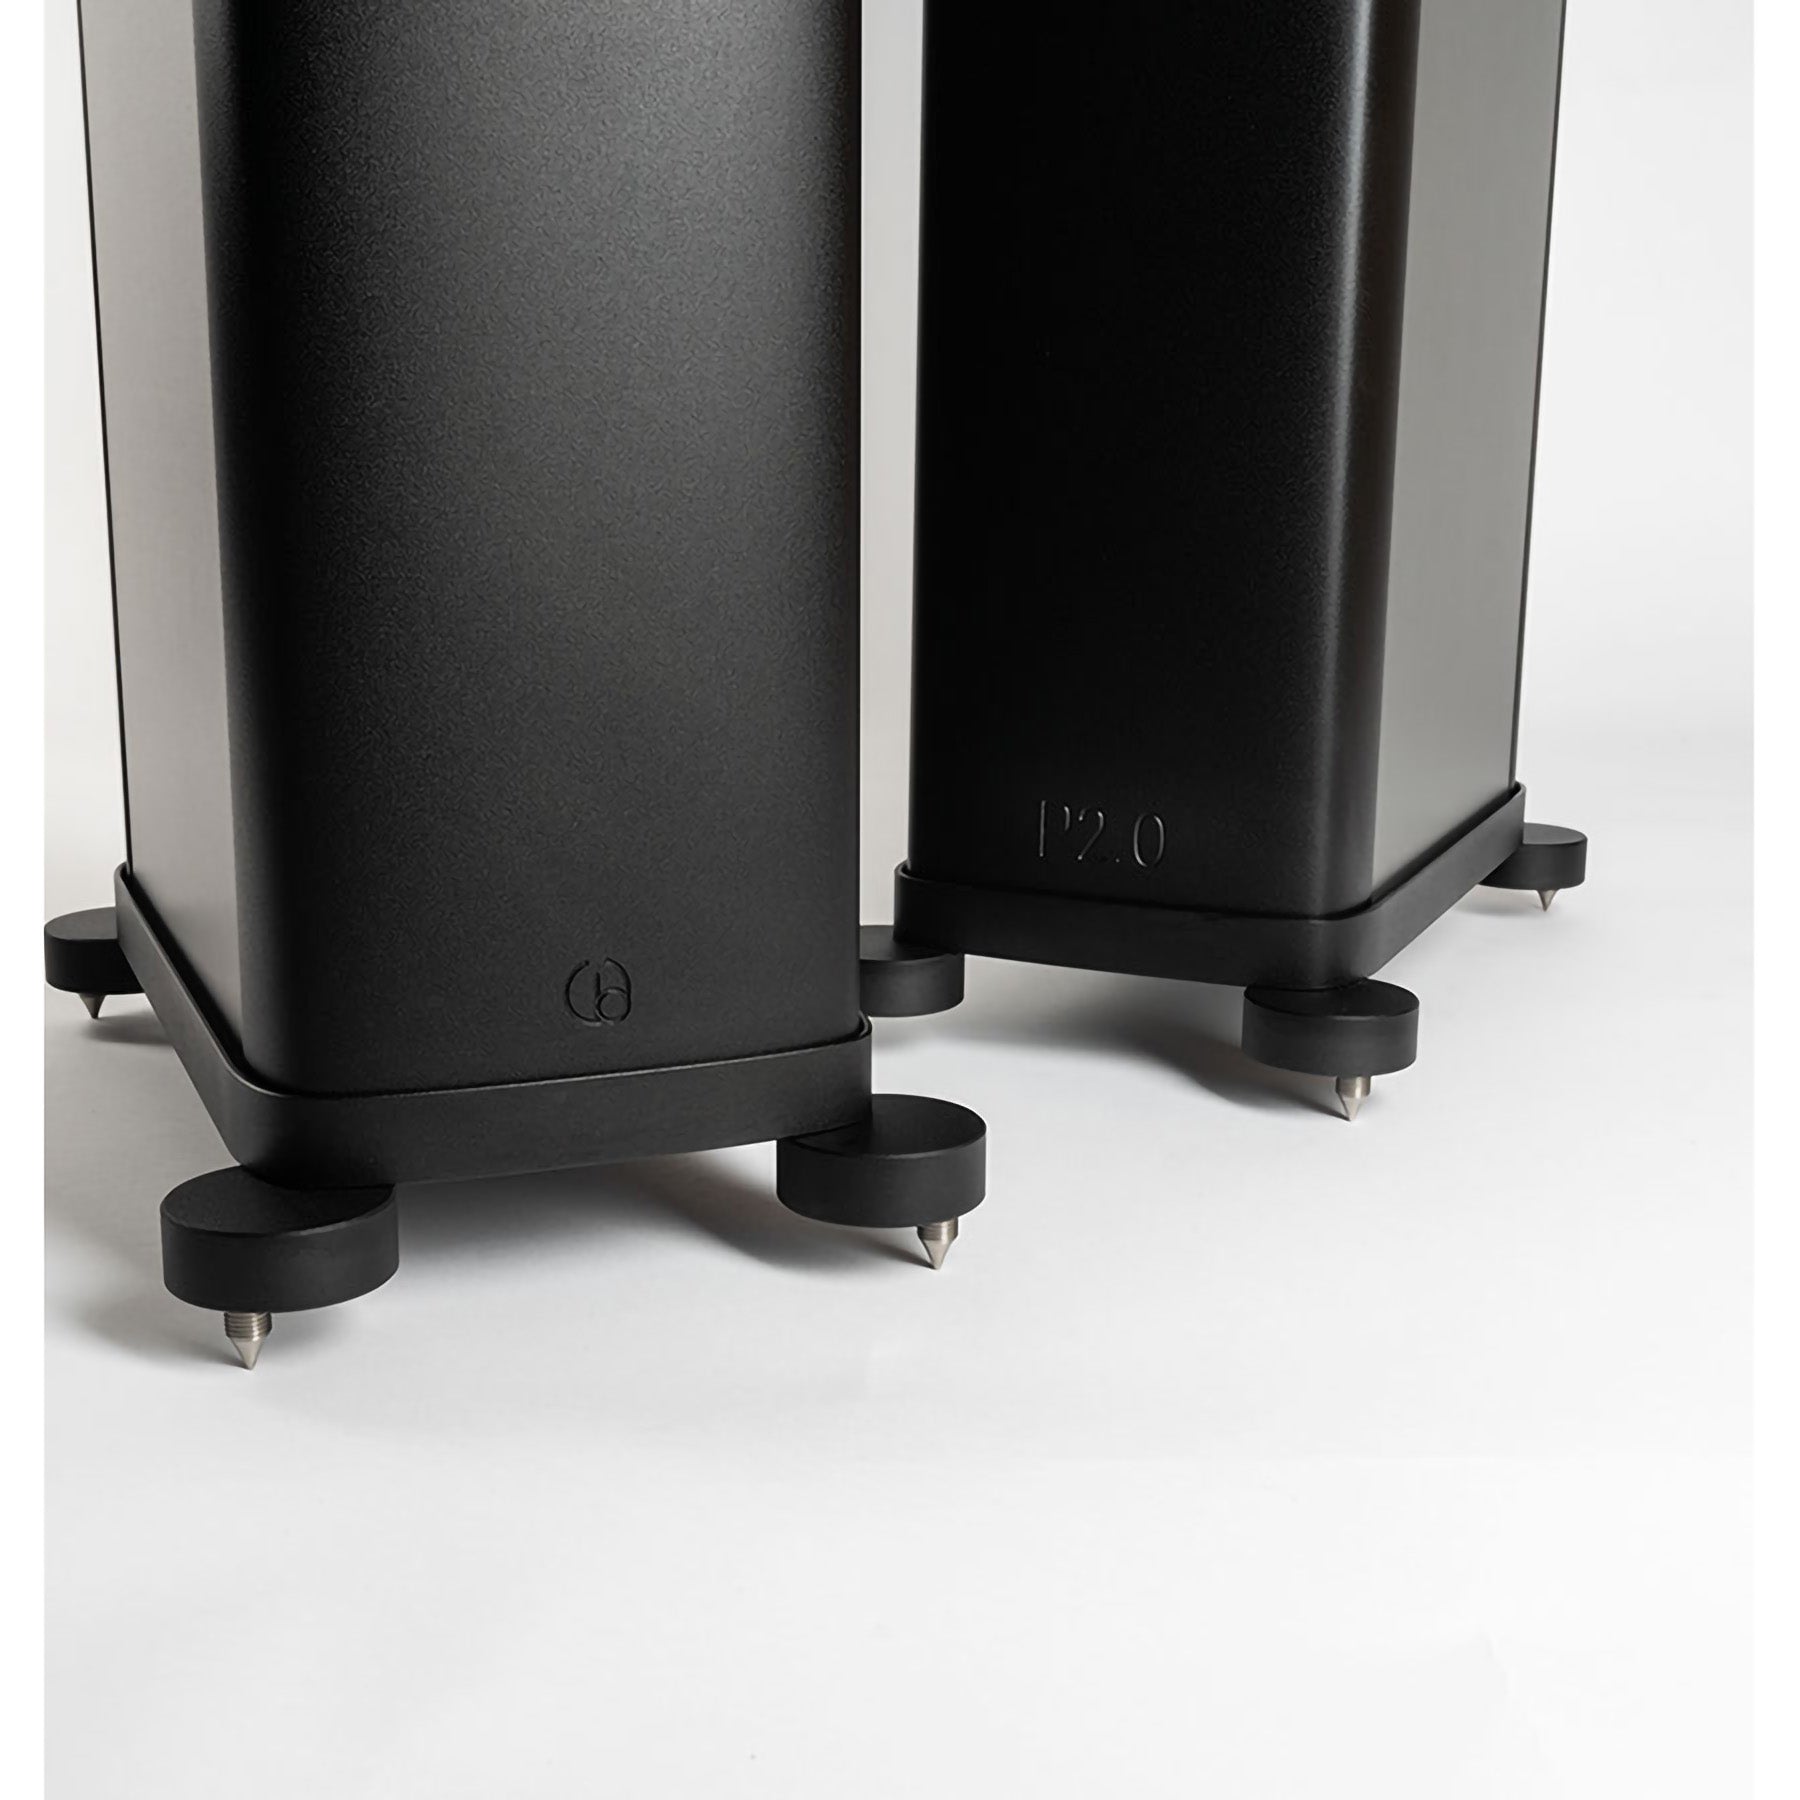 Wilson Benesch Precision Series - P2.0 2.5-way Floorstanding Loudspeaker (pair)